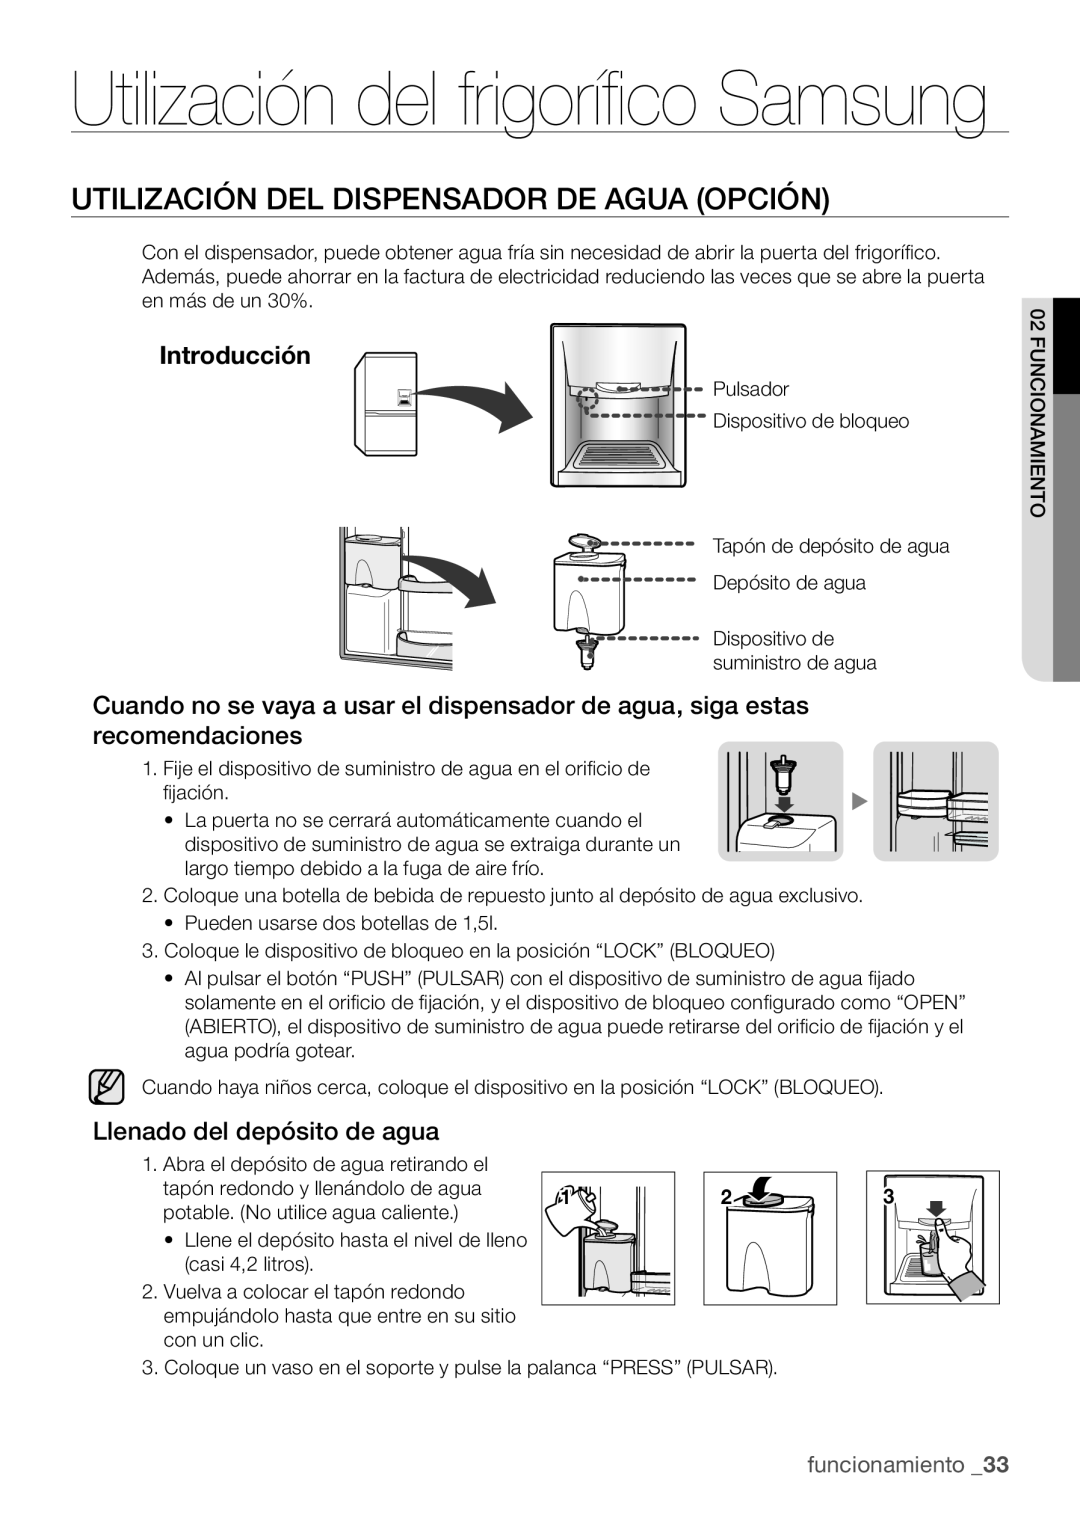 Samsung RL62VCPN1/XES manual Utilización del frigorífico Samsung, Utilización Del Dispensador De Agua Opción, Introducción 